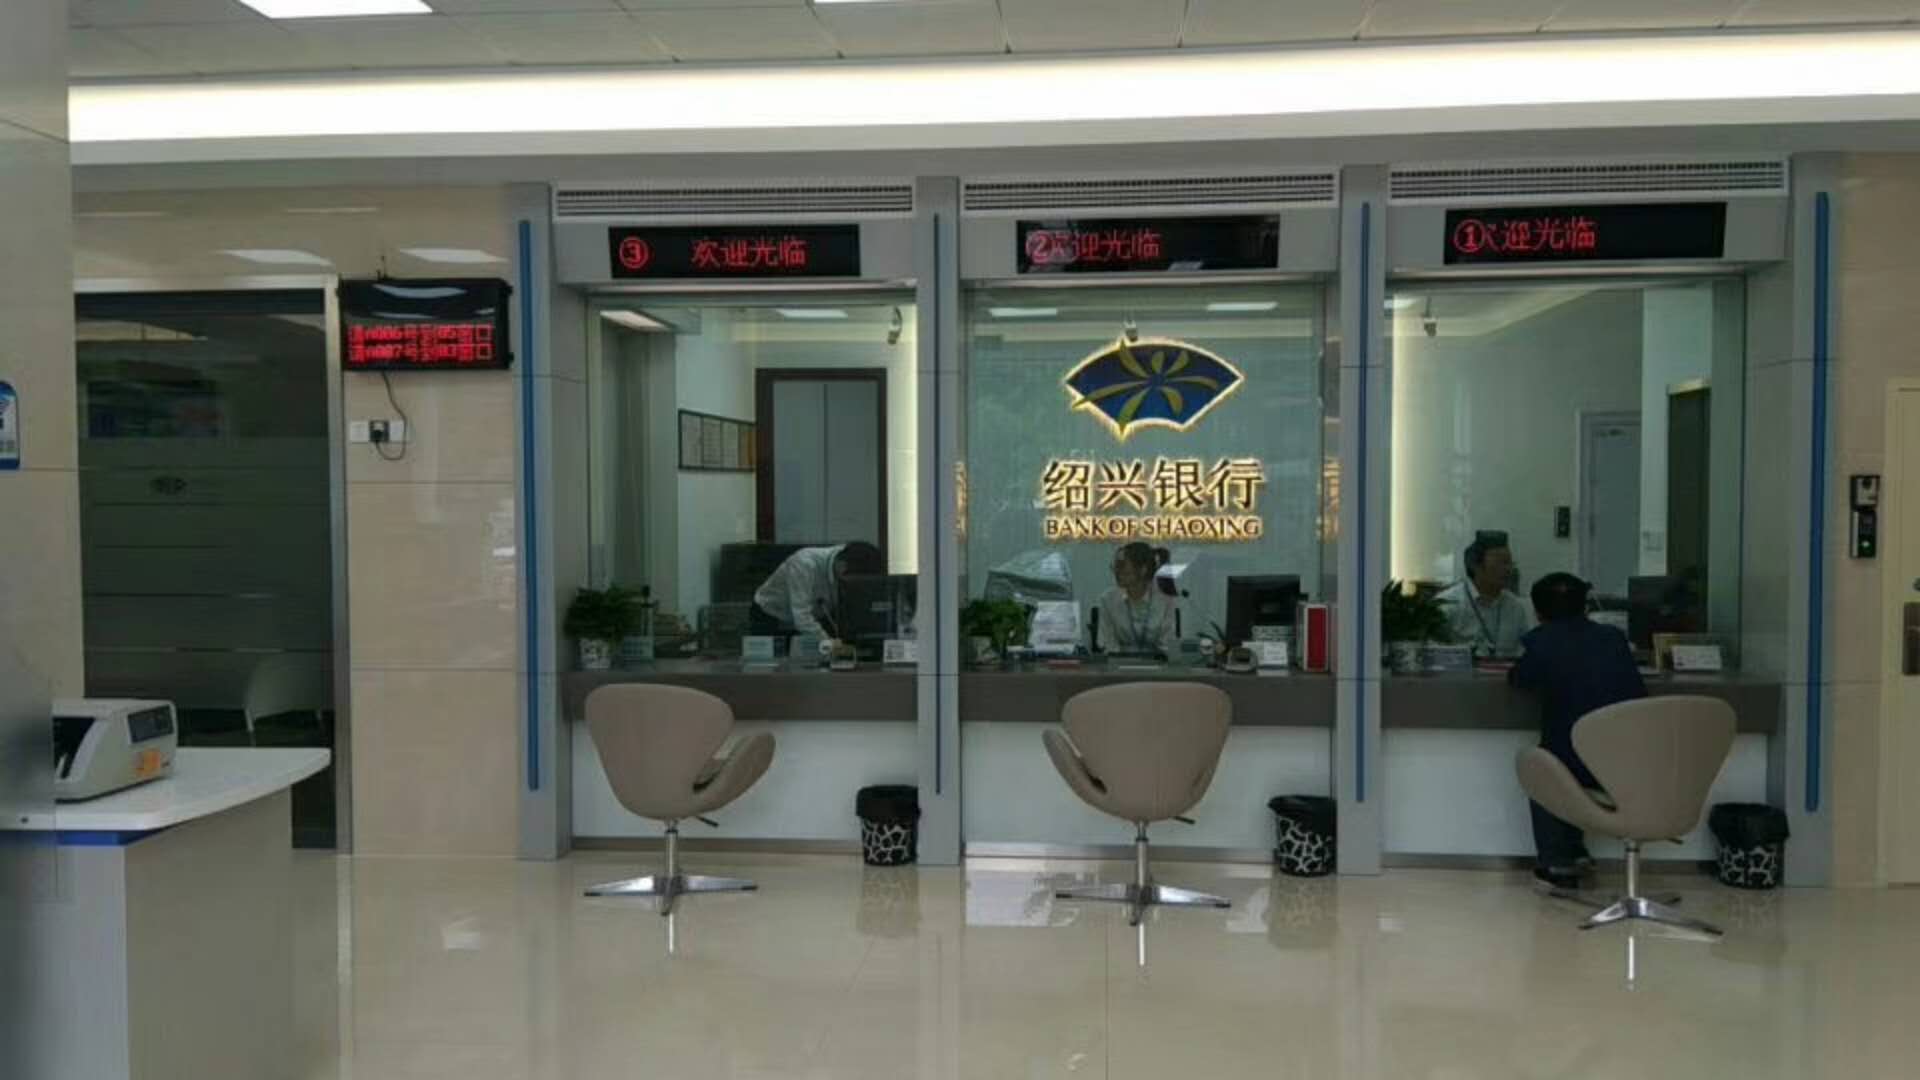 排队机叫号机 - 政务大厅排队叫号系统叫号系统方案及案例 - 深圳永泰